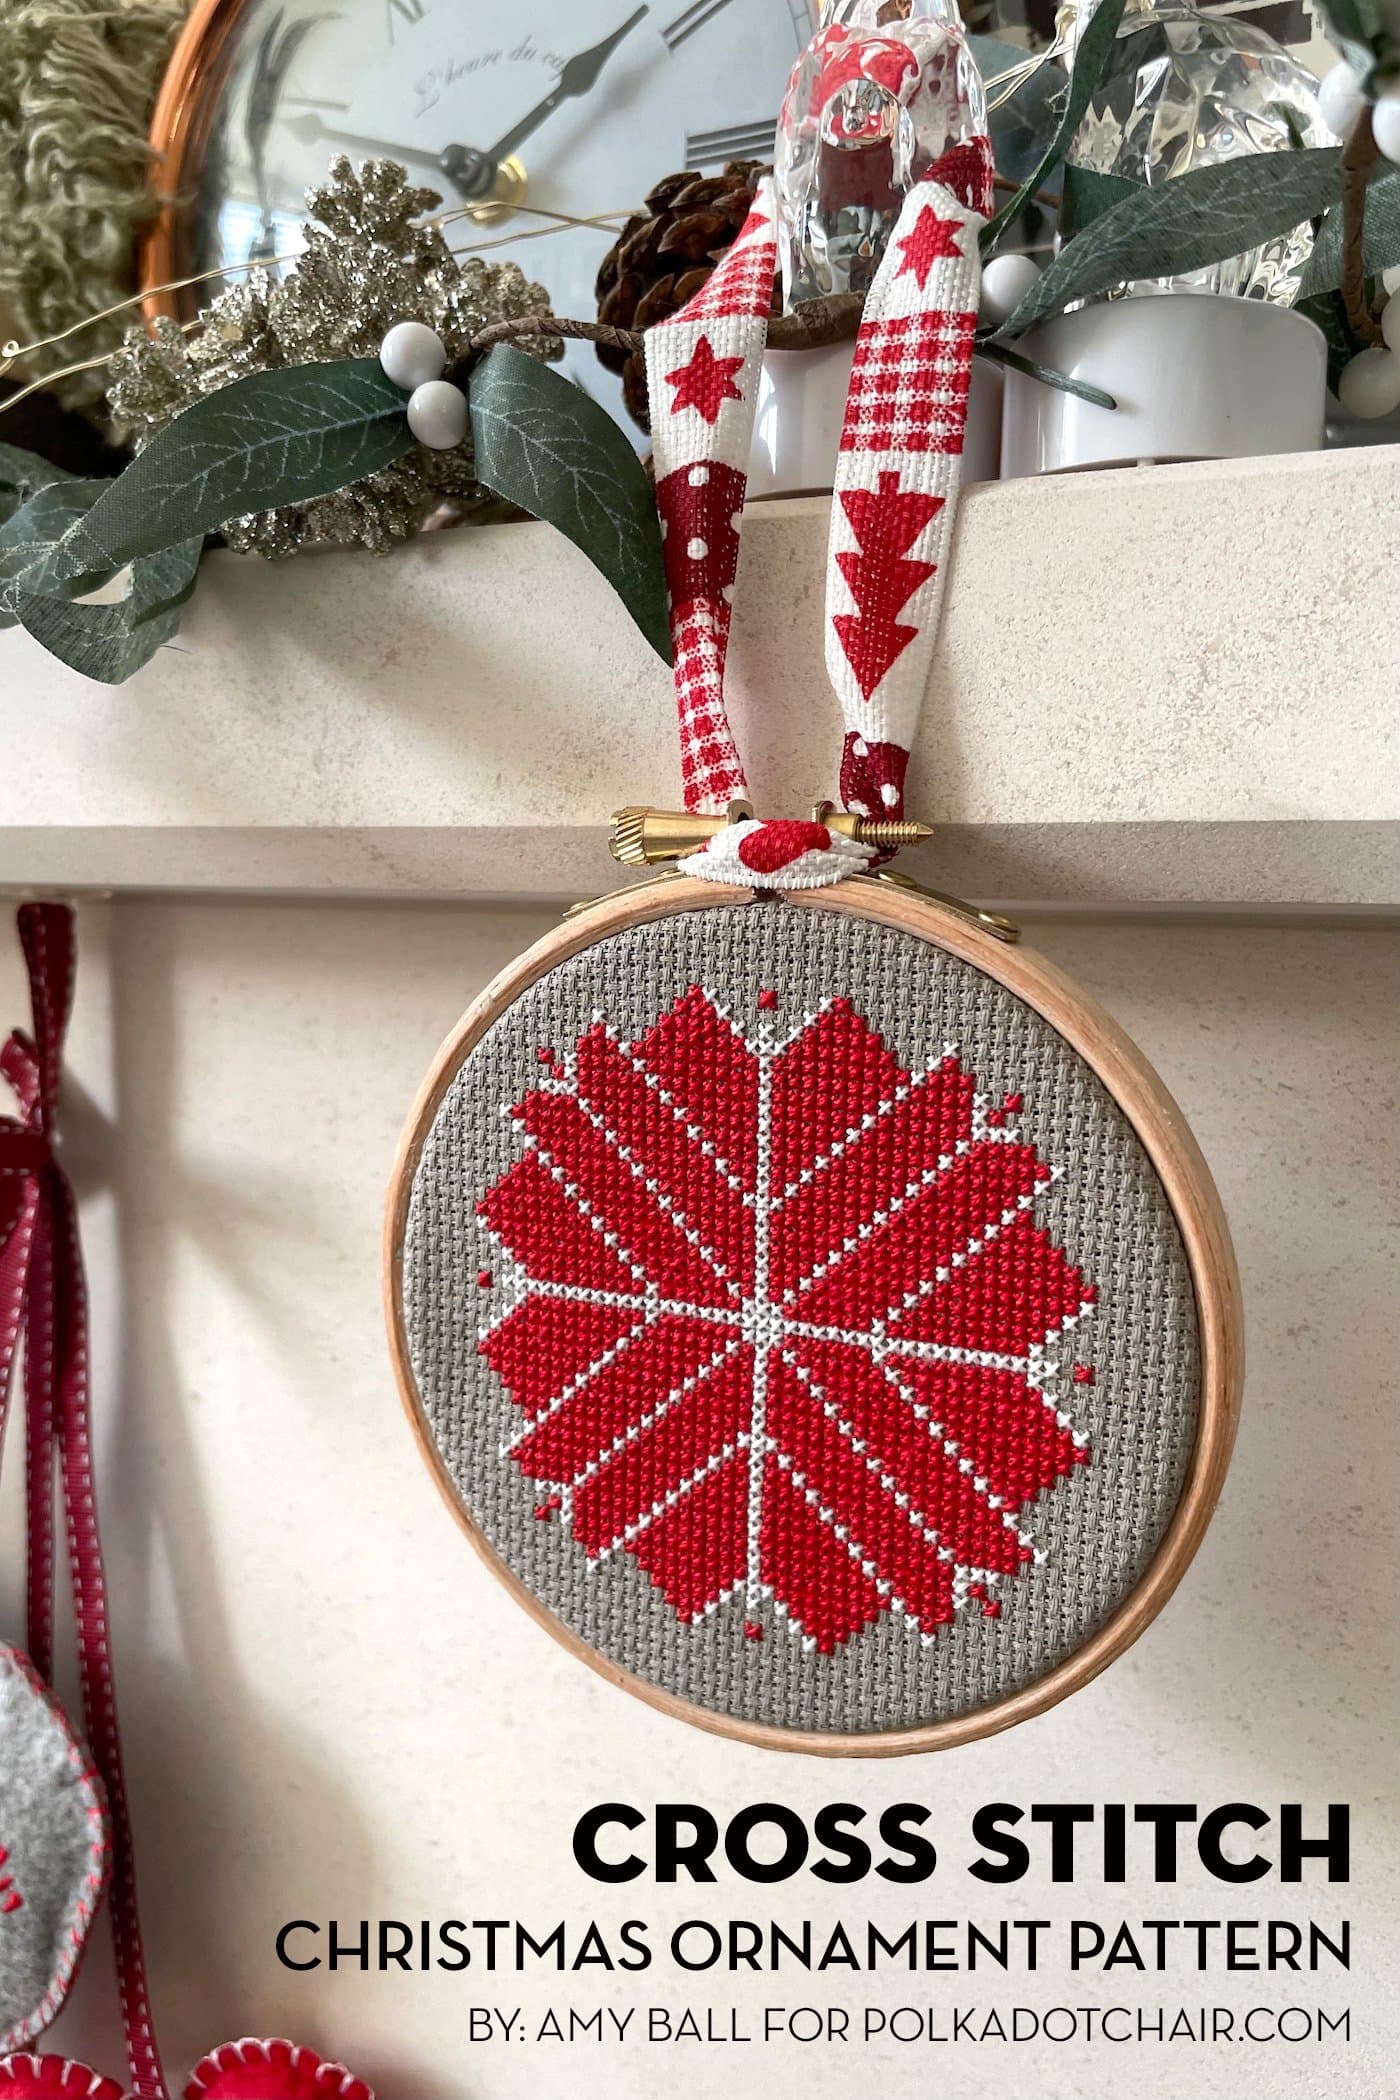 décoration de Noël rouge, blanche et grise accrochée au manteau de la cheminée